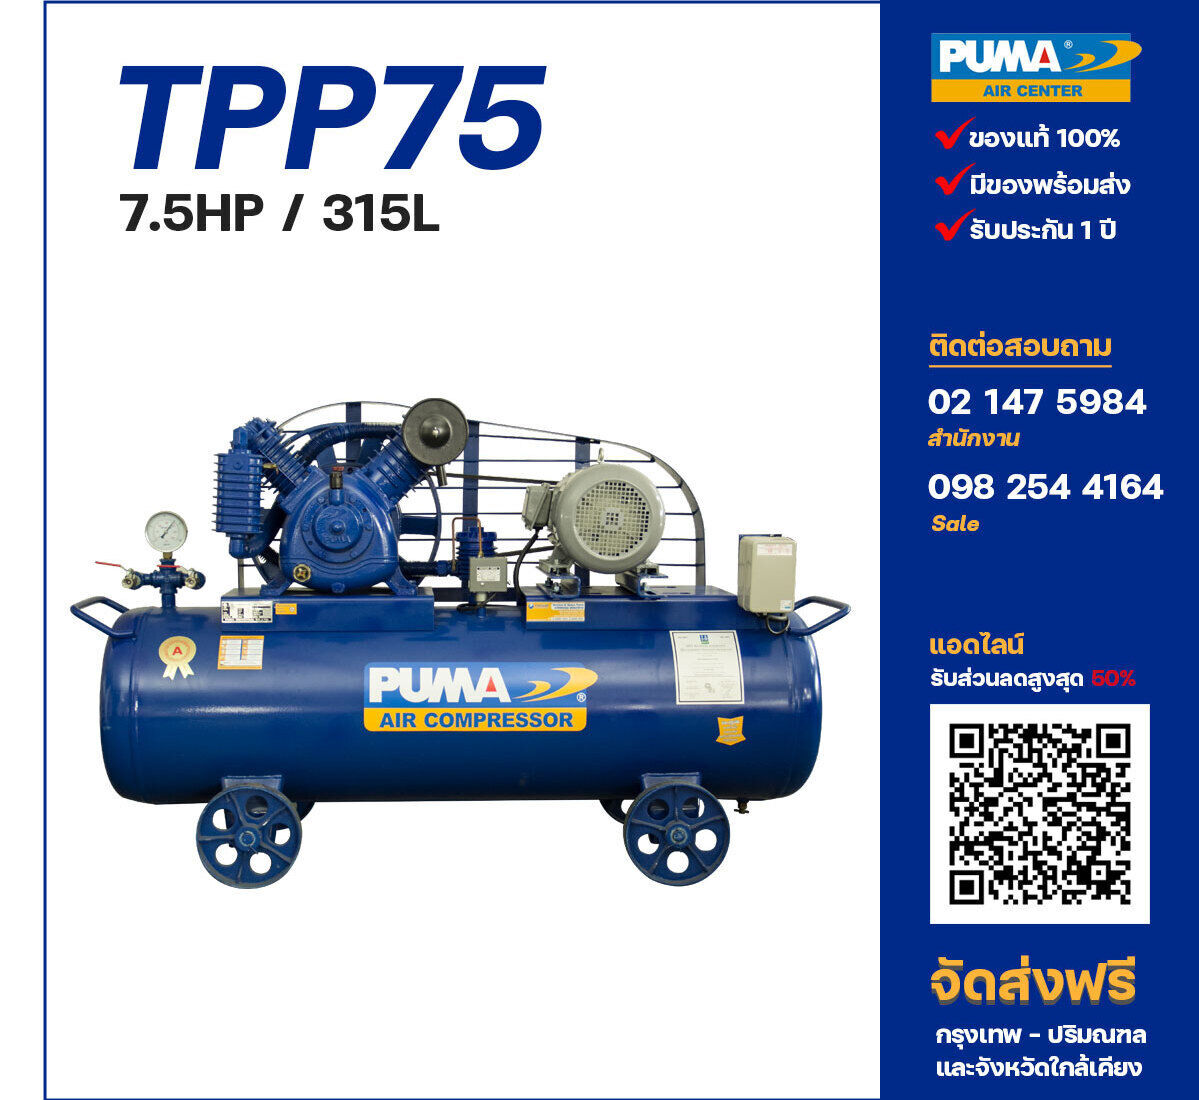 ปั๊มลมพูม่าแรงดันสูง PUMA Two-Stage TPP-7.5 ปั๊มลมลูกสูบ ขนาด 2 สูบ 7.5 แรงม้า 315 ลิตร PUMA พร้อมมอเตอร์ PUMA ไฟ 380V ส่งฟรี กรุงเทพฯ-ปริมณฑล รับประกัน 1 ปี